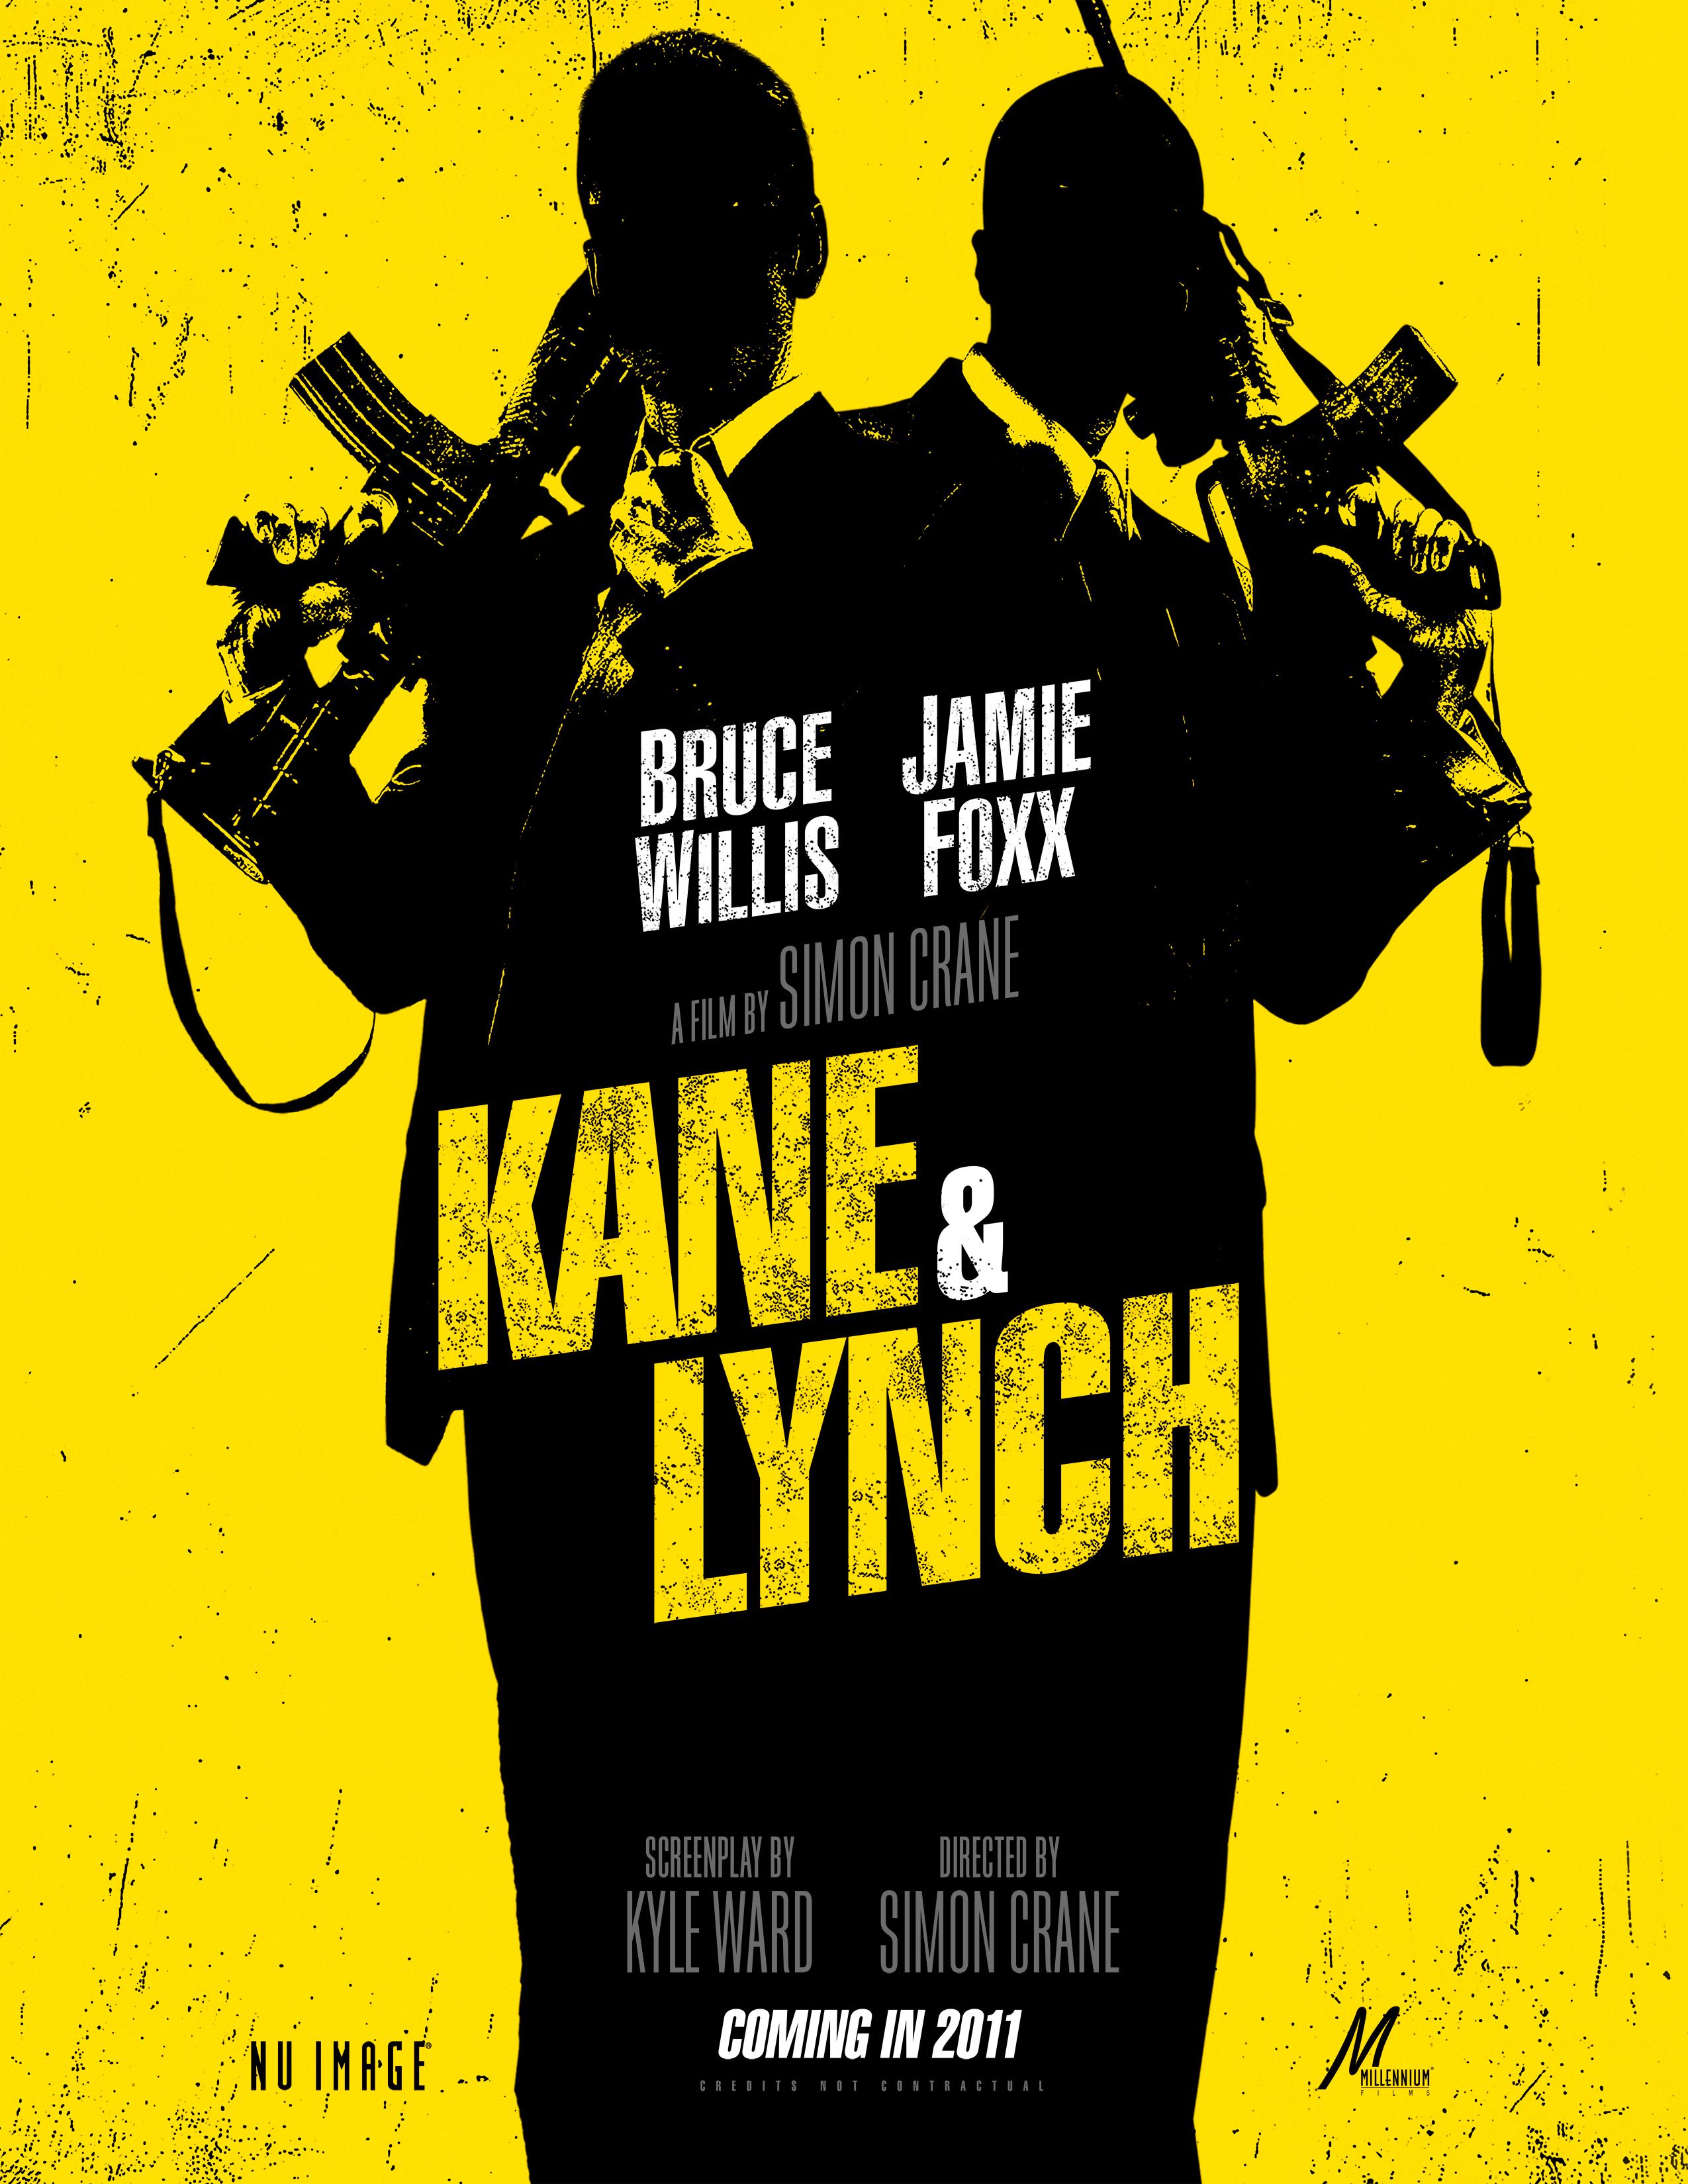 Kane & Lynch poster